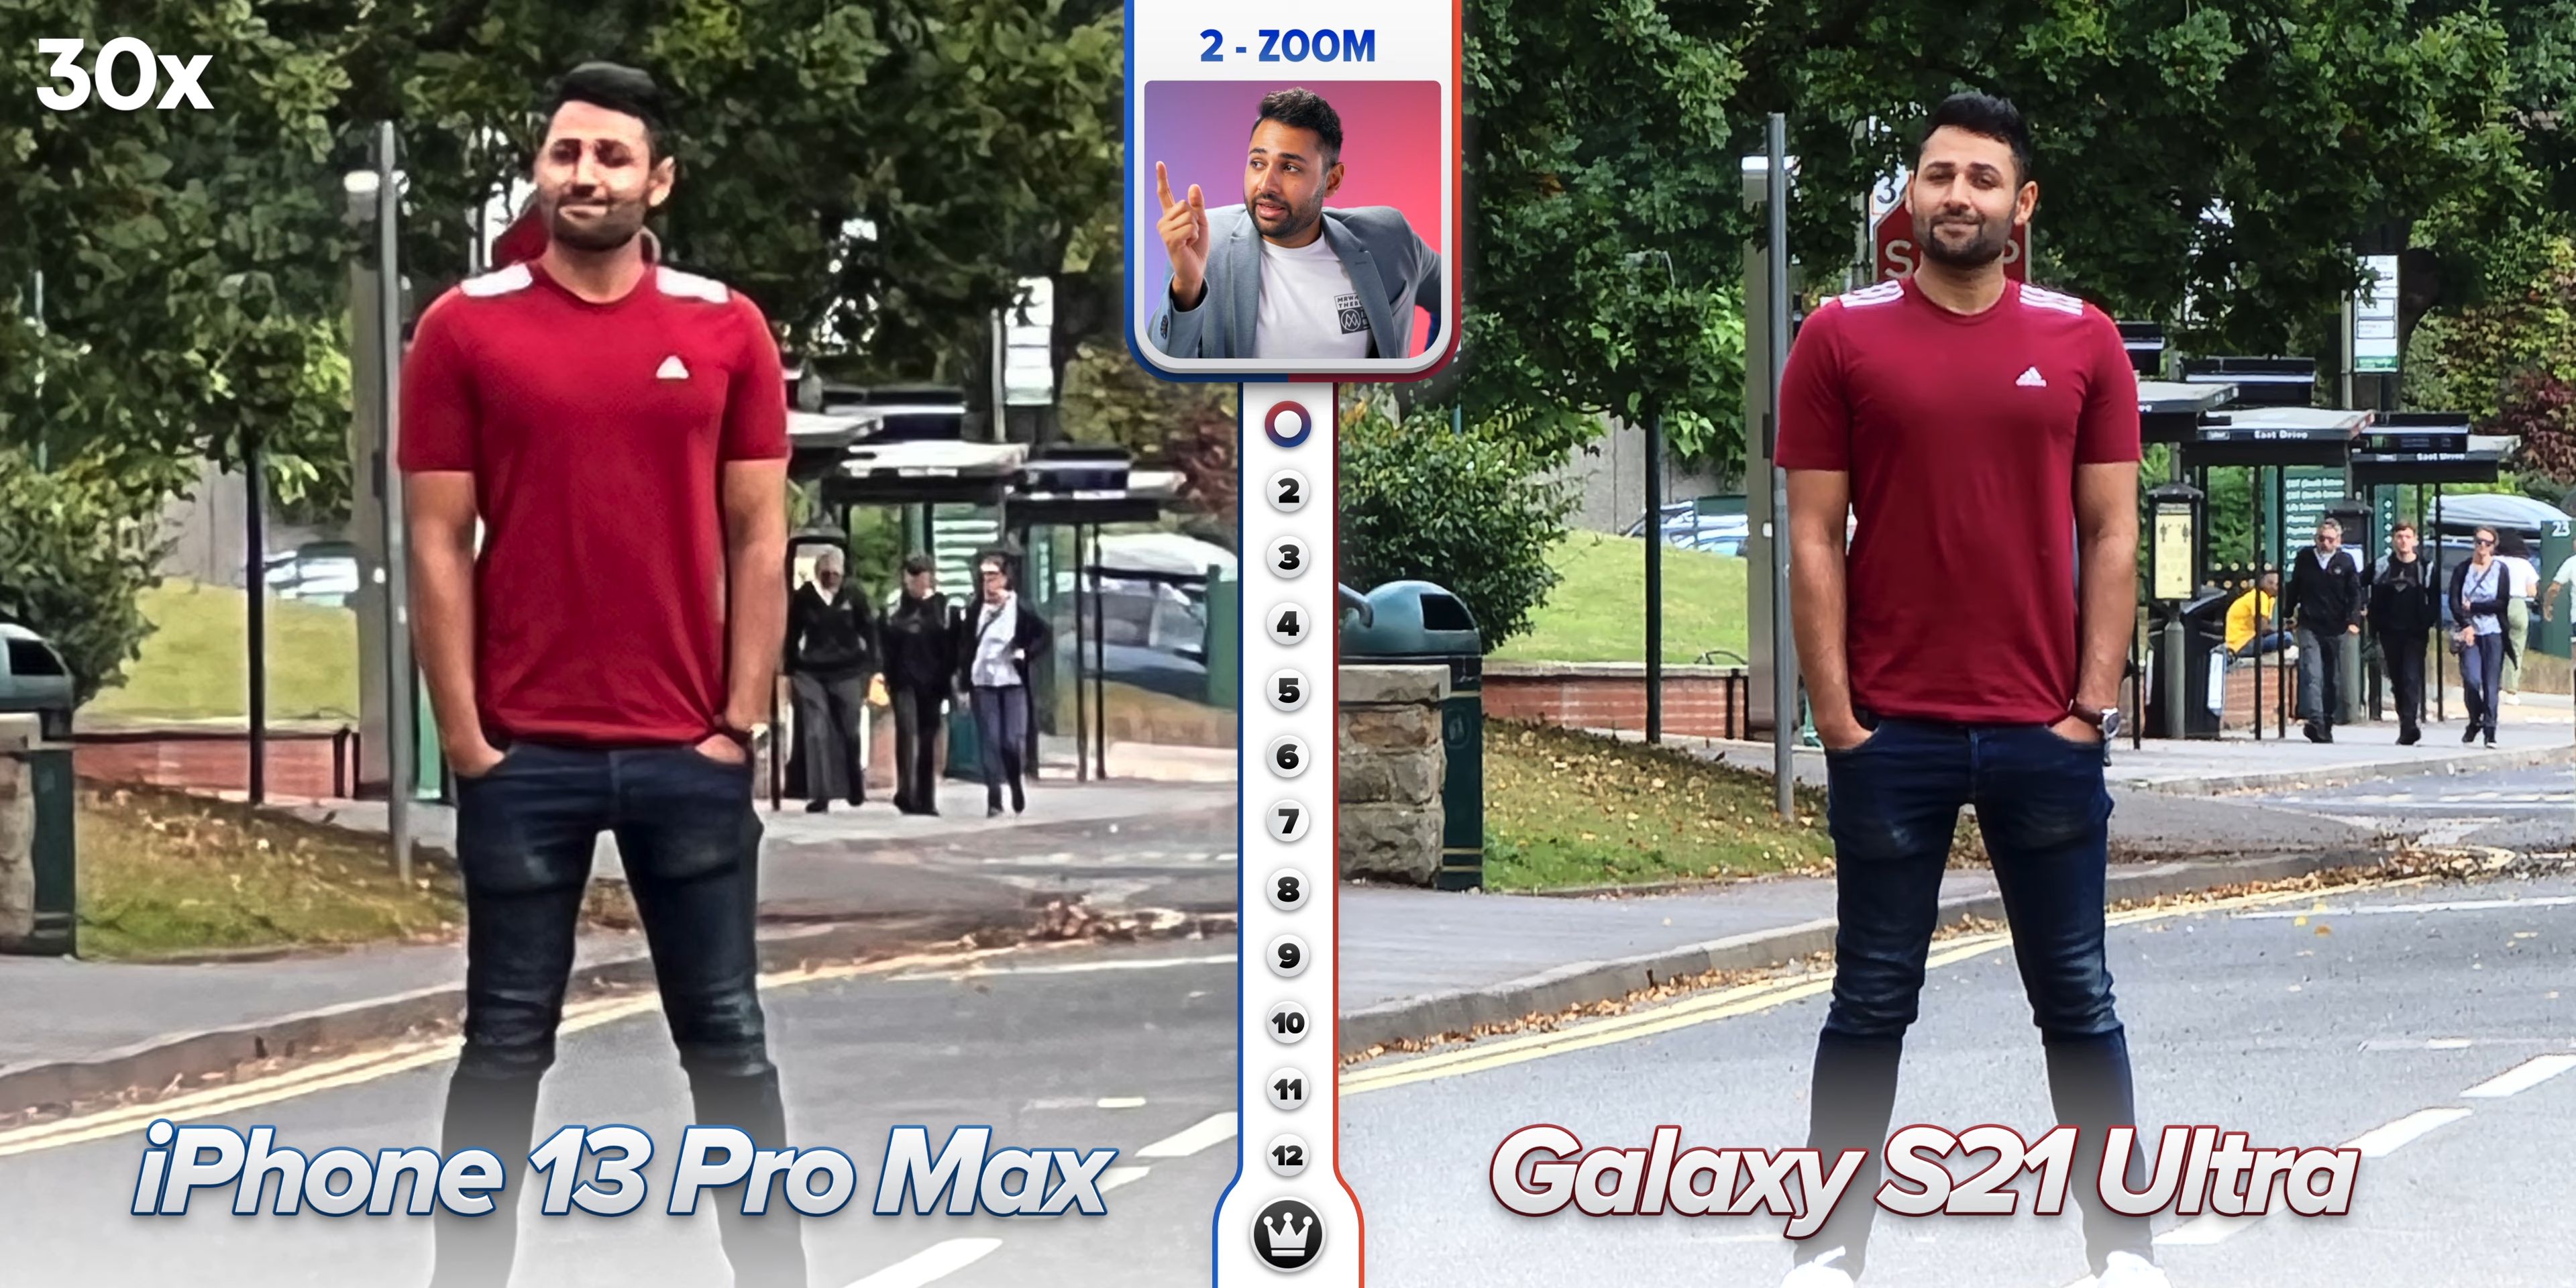 14 айфон про макс качество. Айфон 13 и самсунг ультра камера. Iphone 13 Pro Max камера. Сравнение камер iphone 13 Pro Max. Сравнение камер iphone 13 Pro Max и Samsung Galaxy.